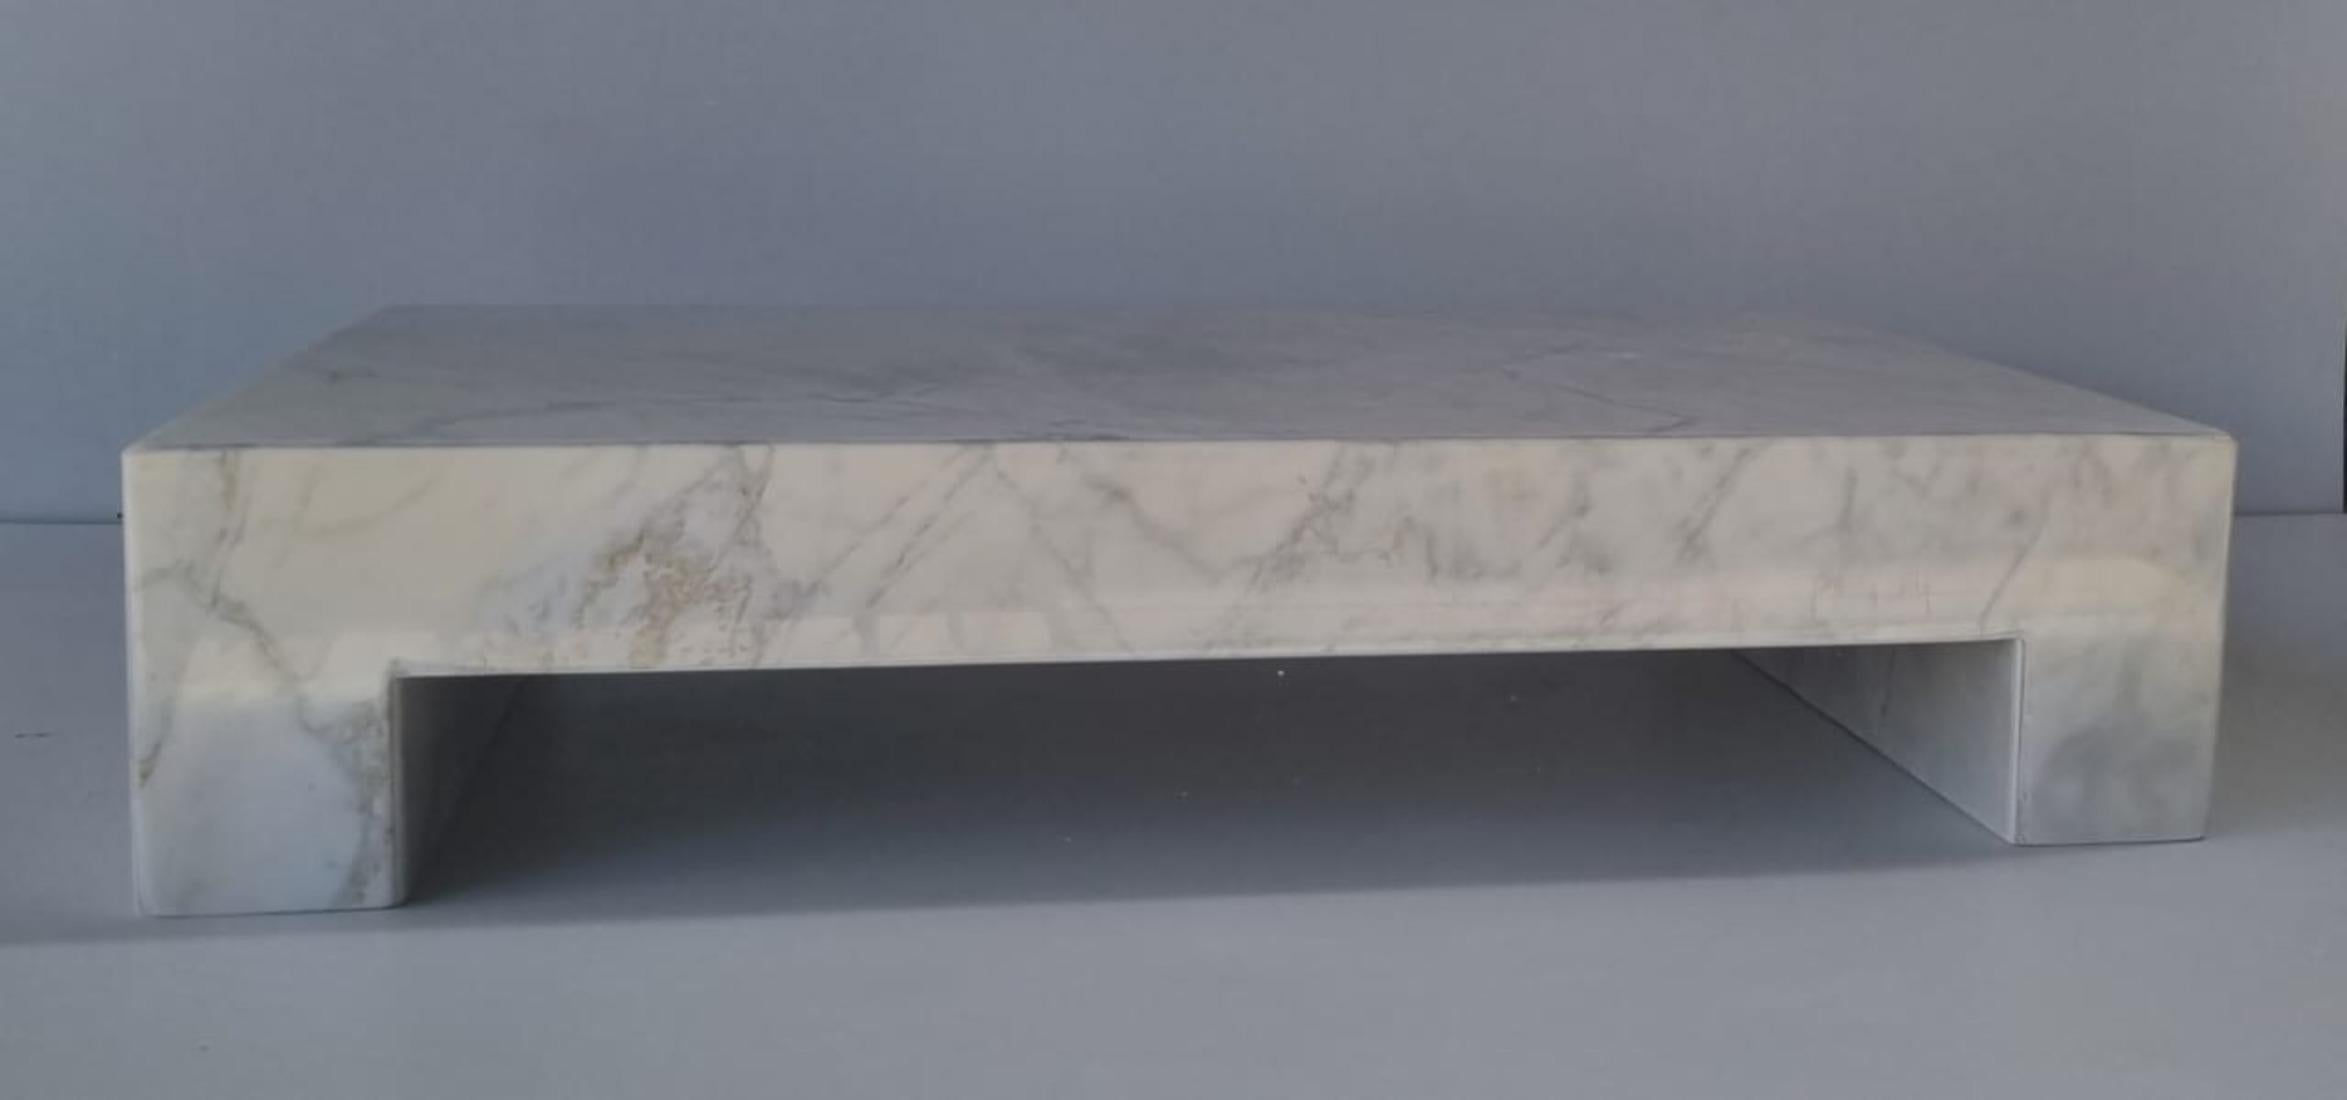 Voici notre exquise table basse en marbre de Carrare à 100 % - un mélange captivant d'élégance intemporelle et de sophistication moderne. Fabriquée à partir du plus beau marbre de Carrare, réputé pour sa couleur blanche immaculée et ses subtiles